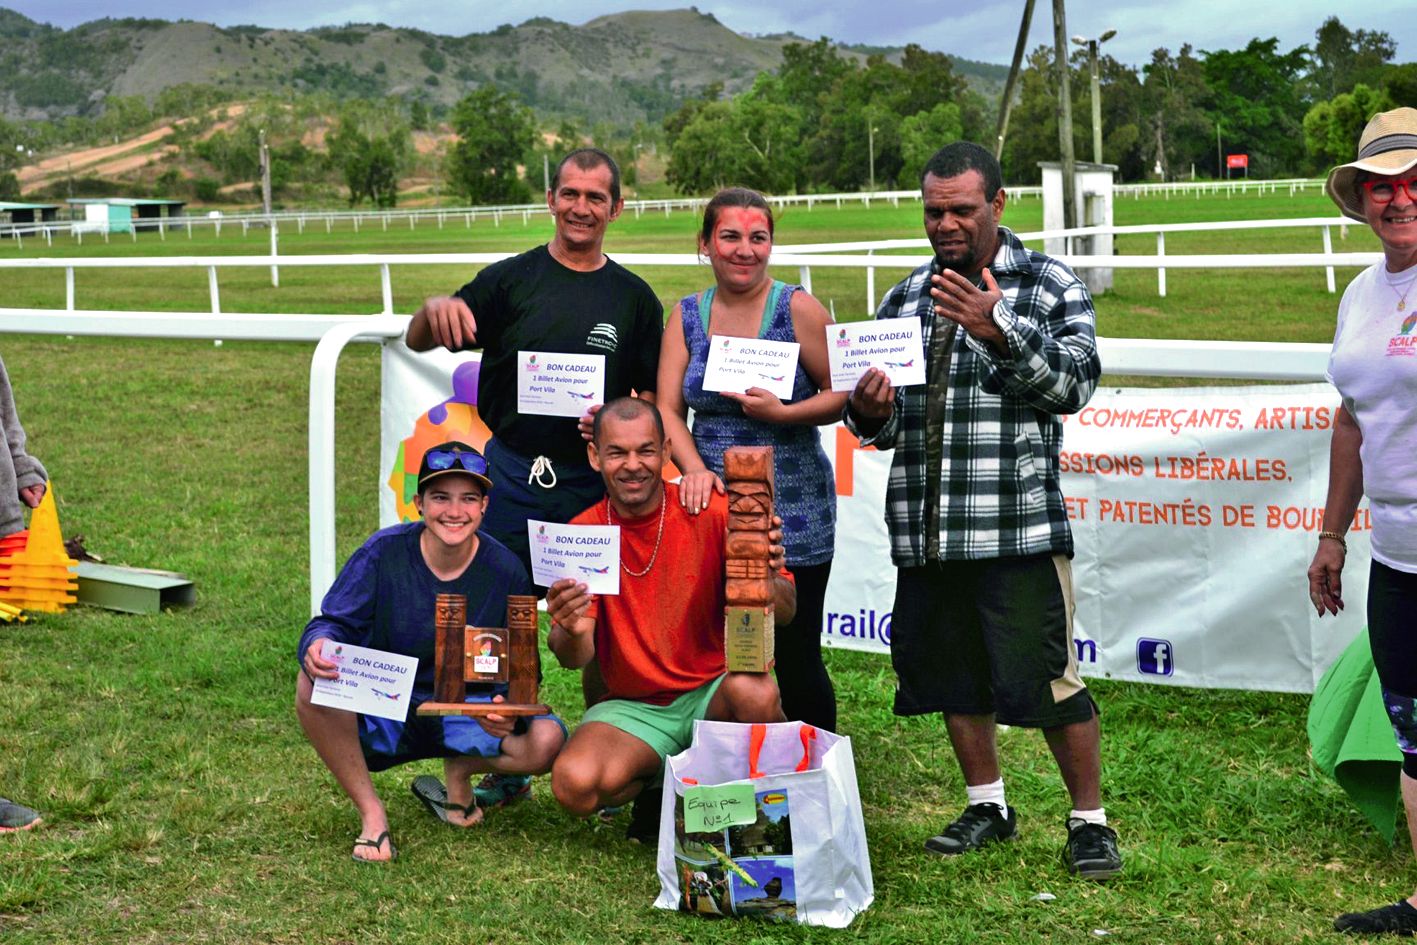 Après l’effort, les récompenses. Les gagnants sont repartis avec de beaux cadeaux, dont un voyage pour le Vanuatu pour chaque membre de l’équipe.